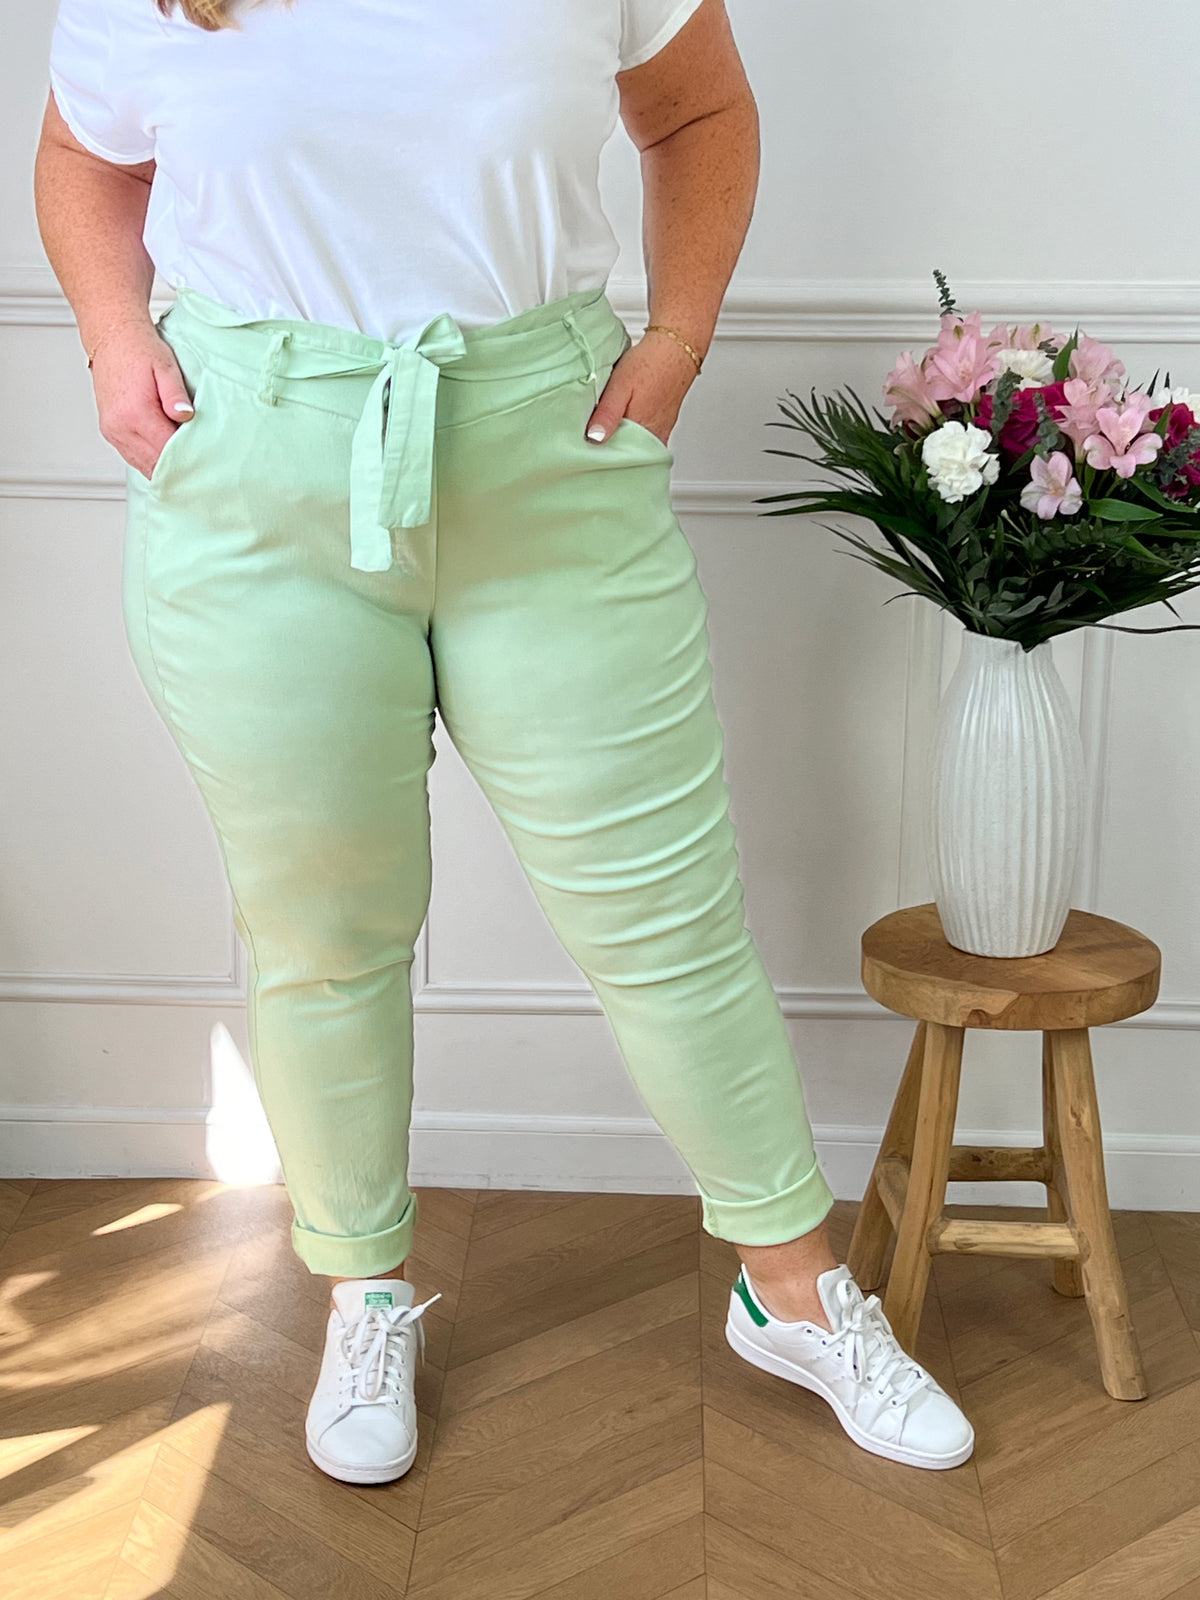 Le pantalon vert menthe, le basic à avoir ! Si vous souhaitez marquer votre taille, vous pouvez également rentrer le haut dans le pantalon.